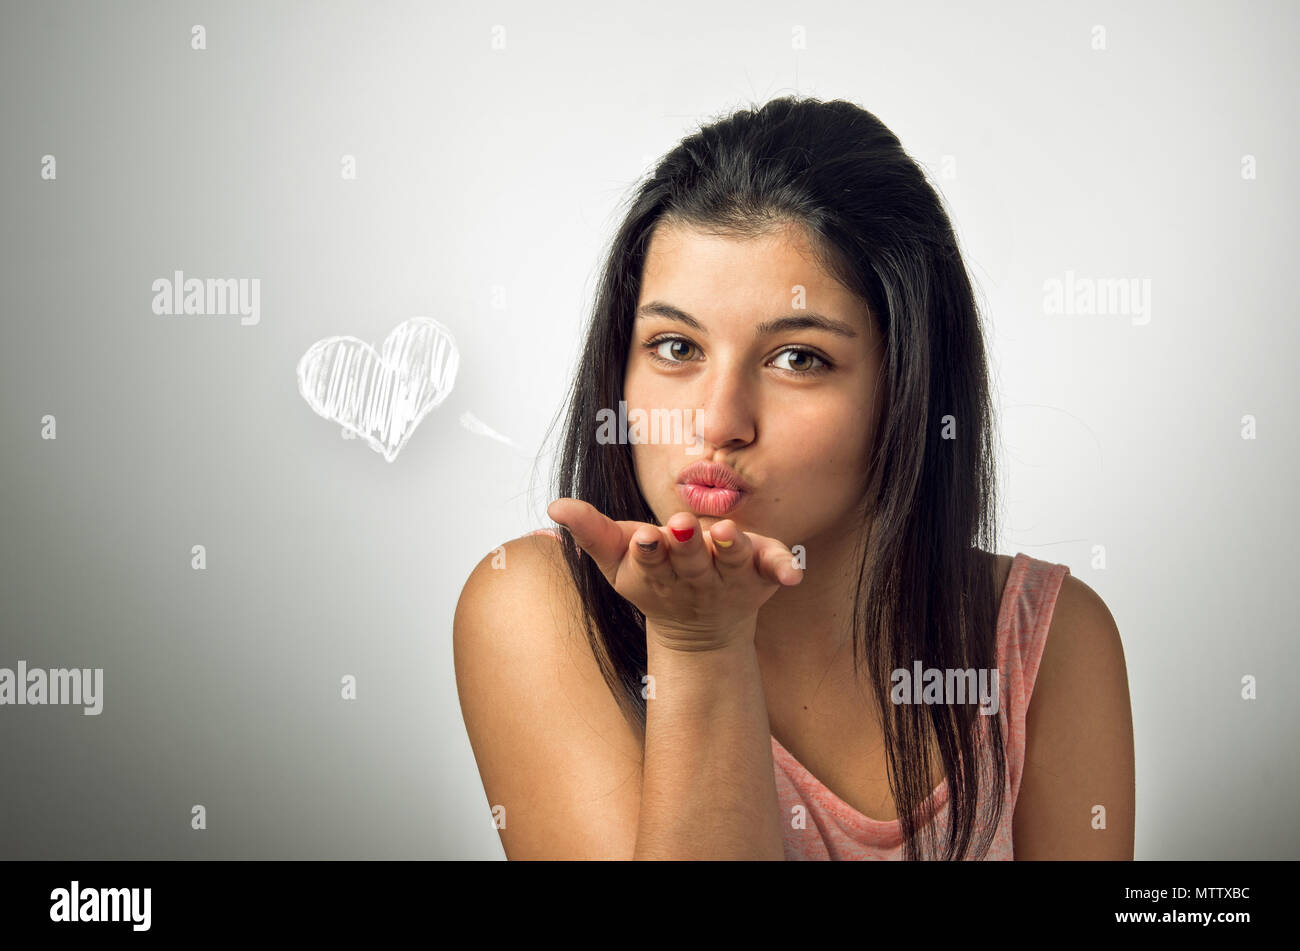 Belle brune adolescente blowing a kiss Banque D'Images